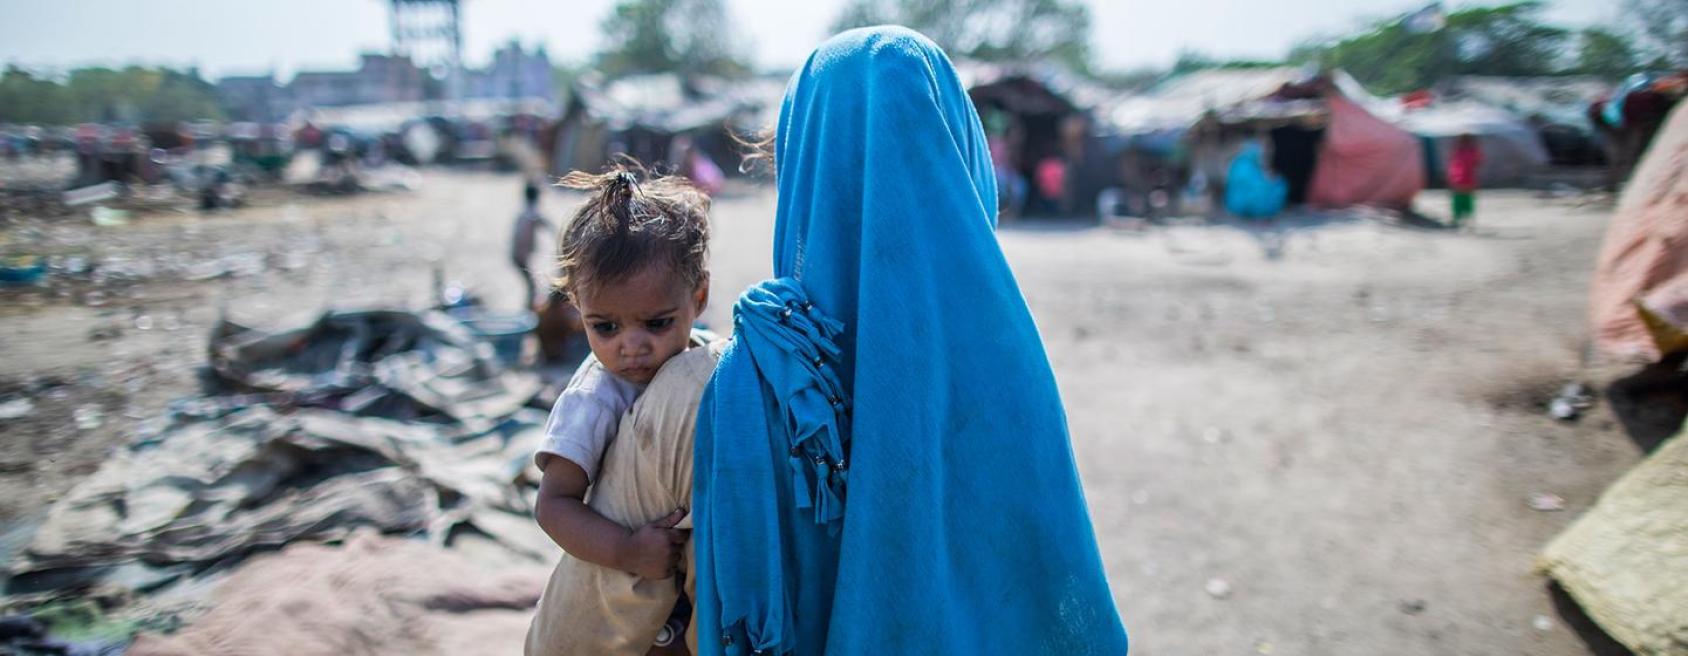 Une femme portant un long voile bleu et tenant un jeune enfant dans les bras est photographiée de dos, debout au milieu d’un camp de réfugiés.